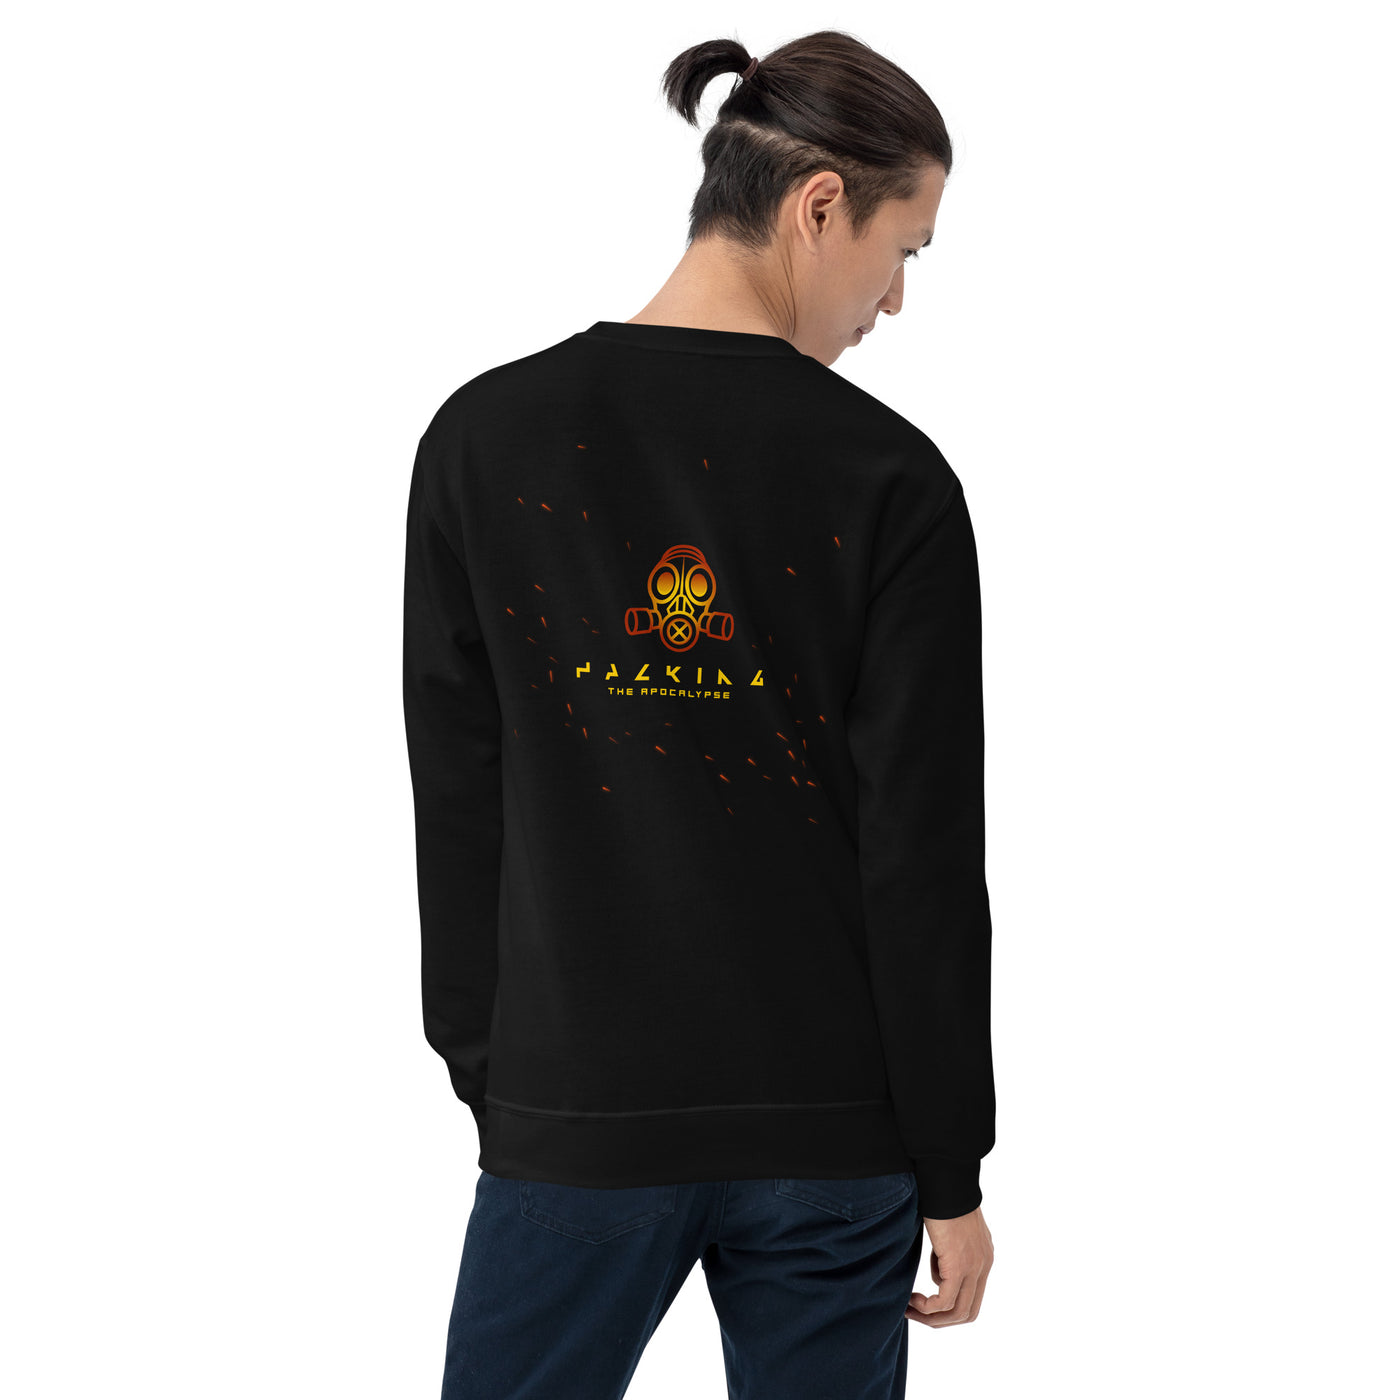 Hacking the apocalypse - Unisex Sweatshirt ( Back Print )